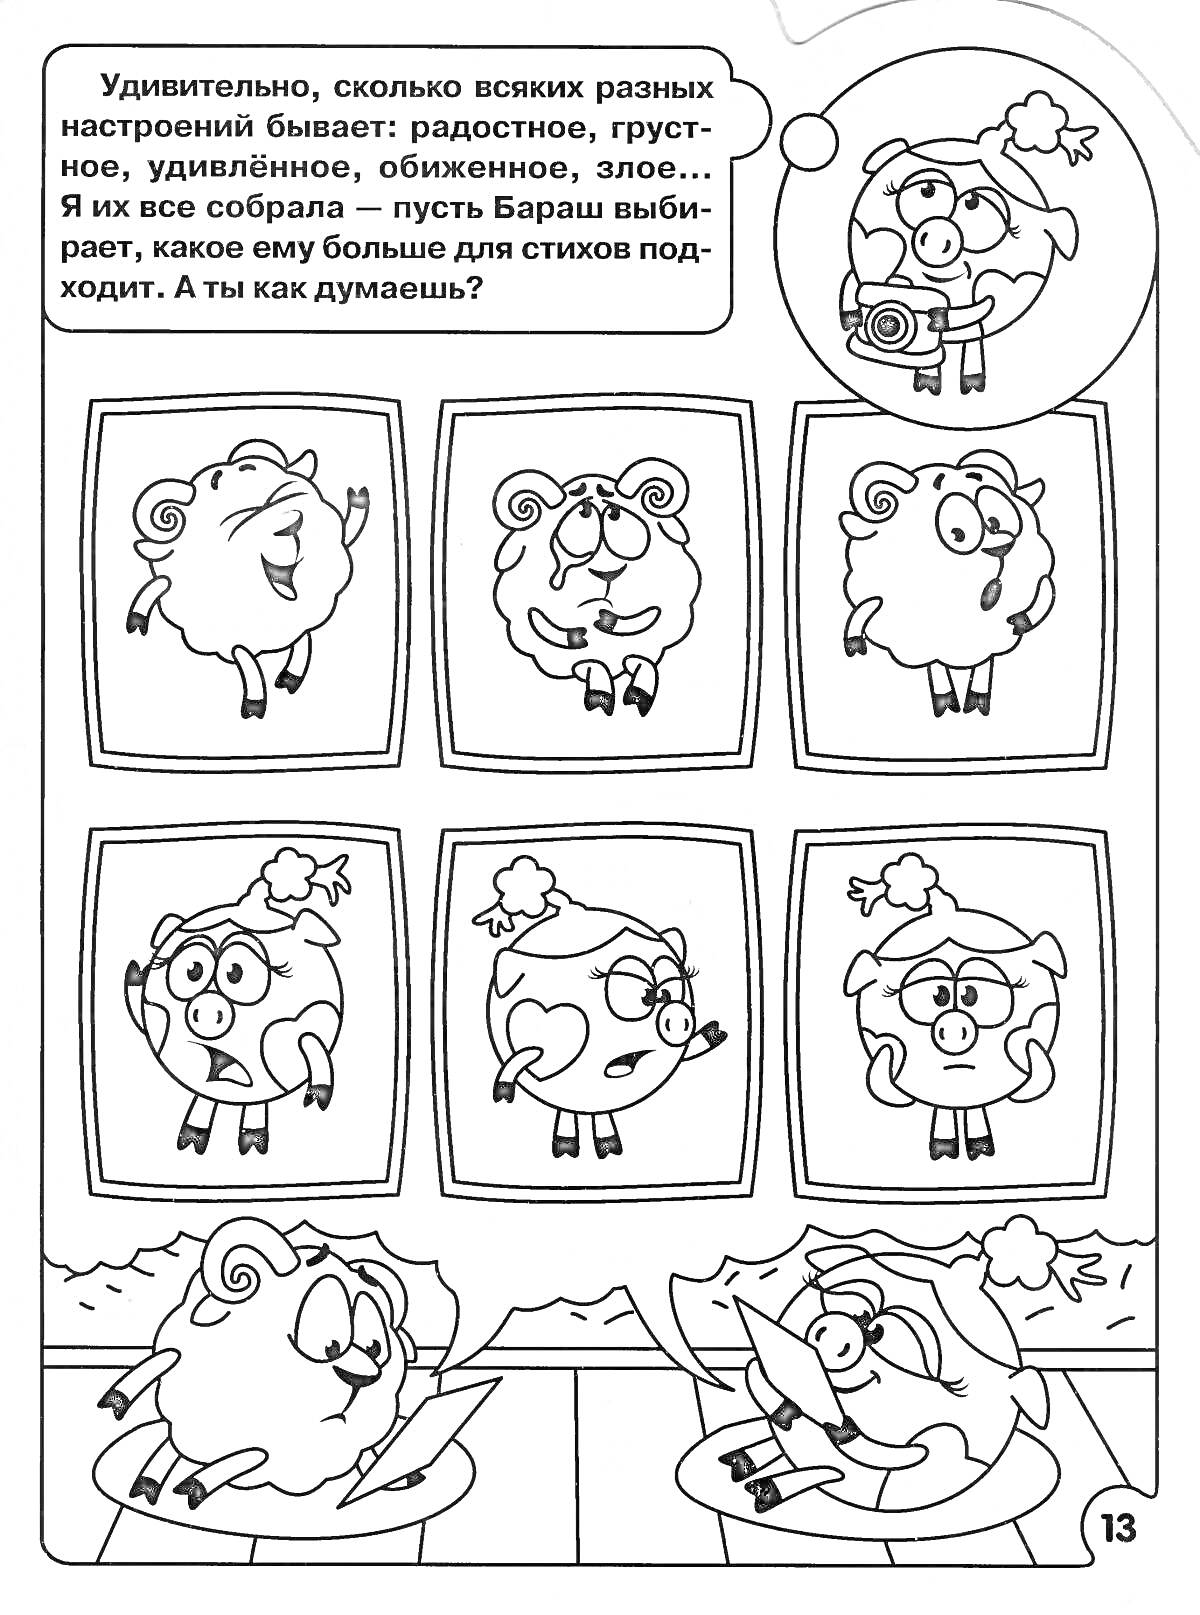 Раскраска Шесть овечек со различными эмоциями на экране монитора, за столом сидят две овечки